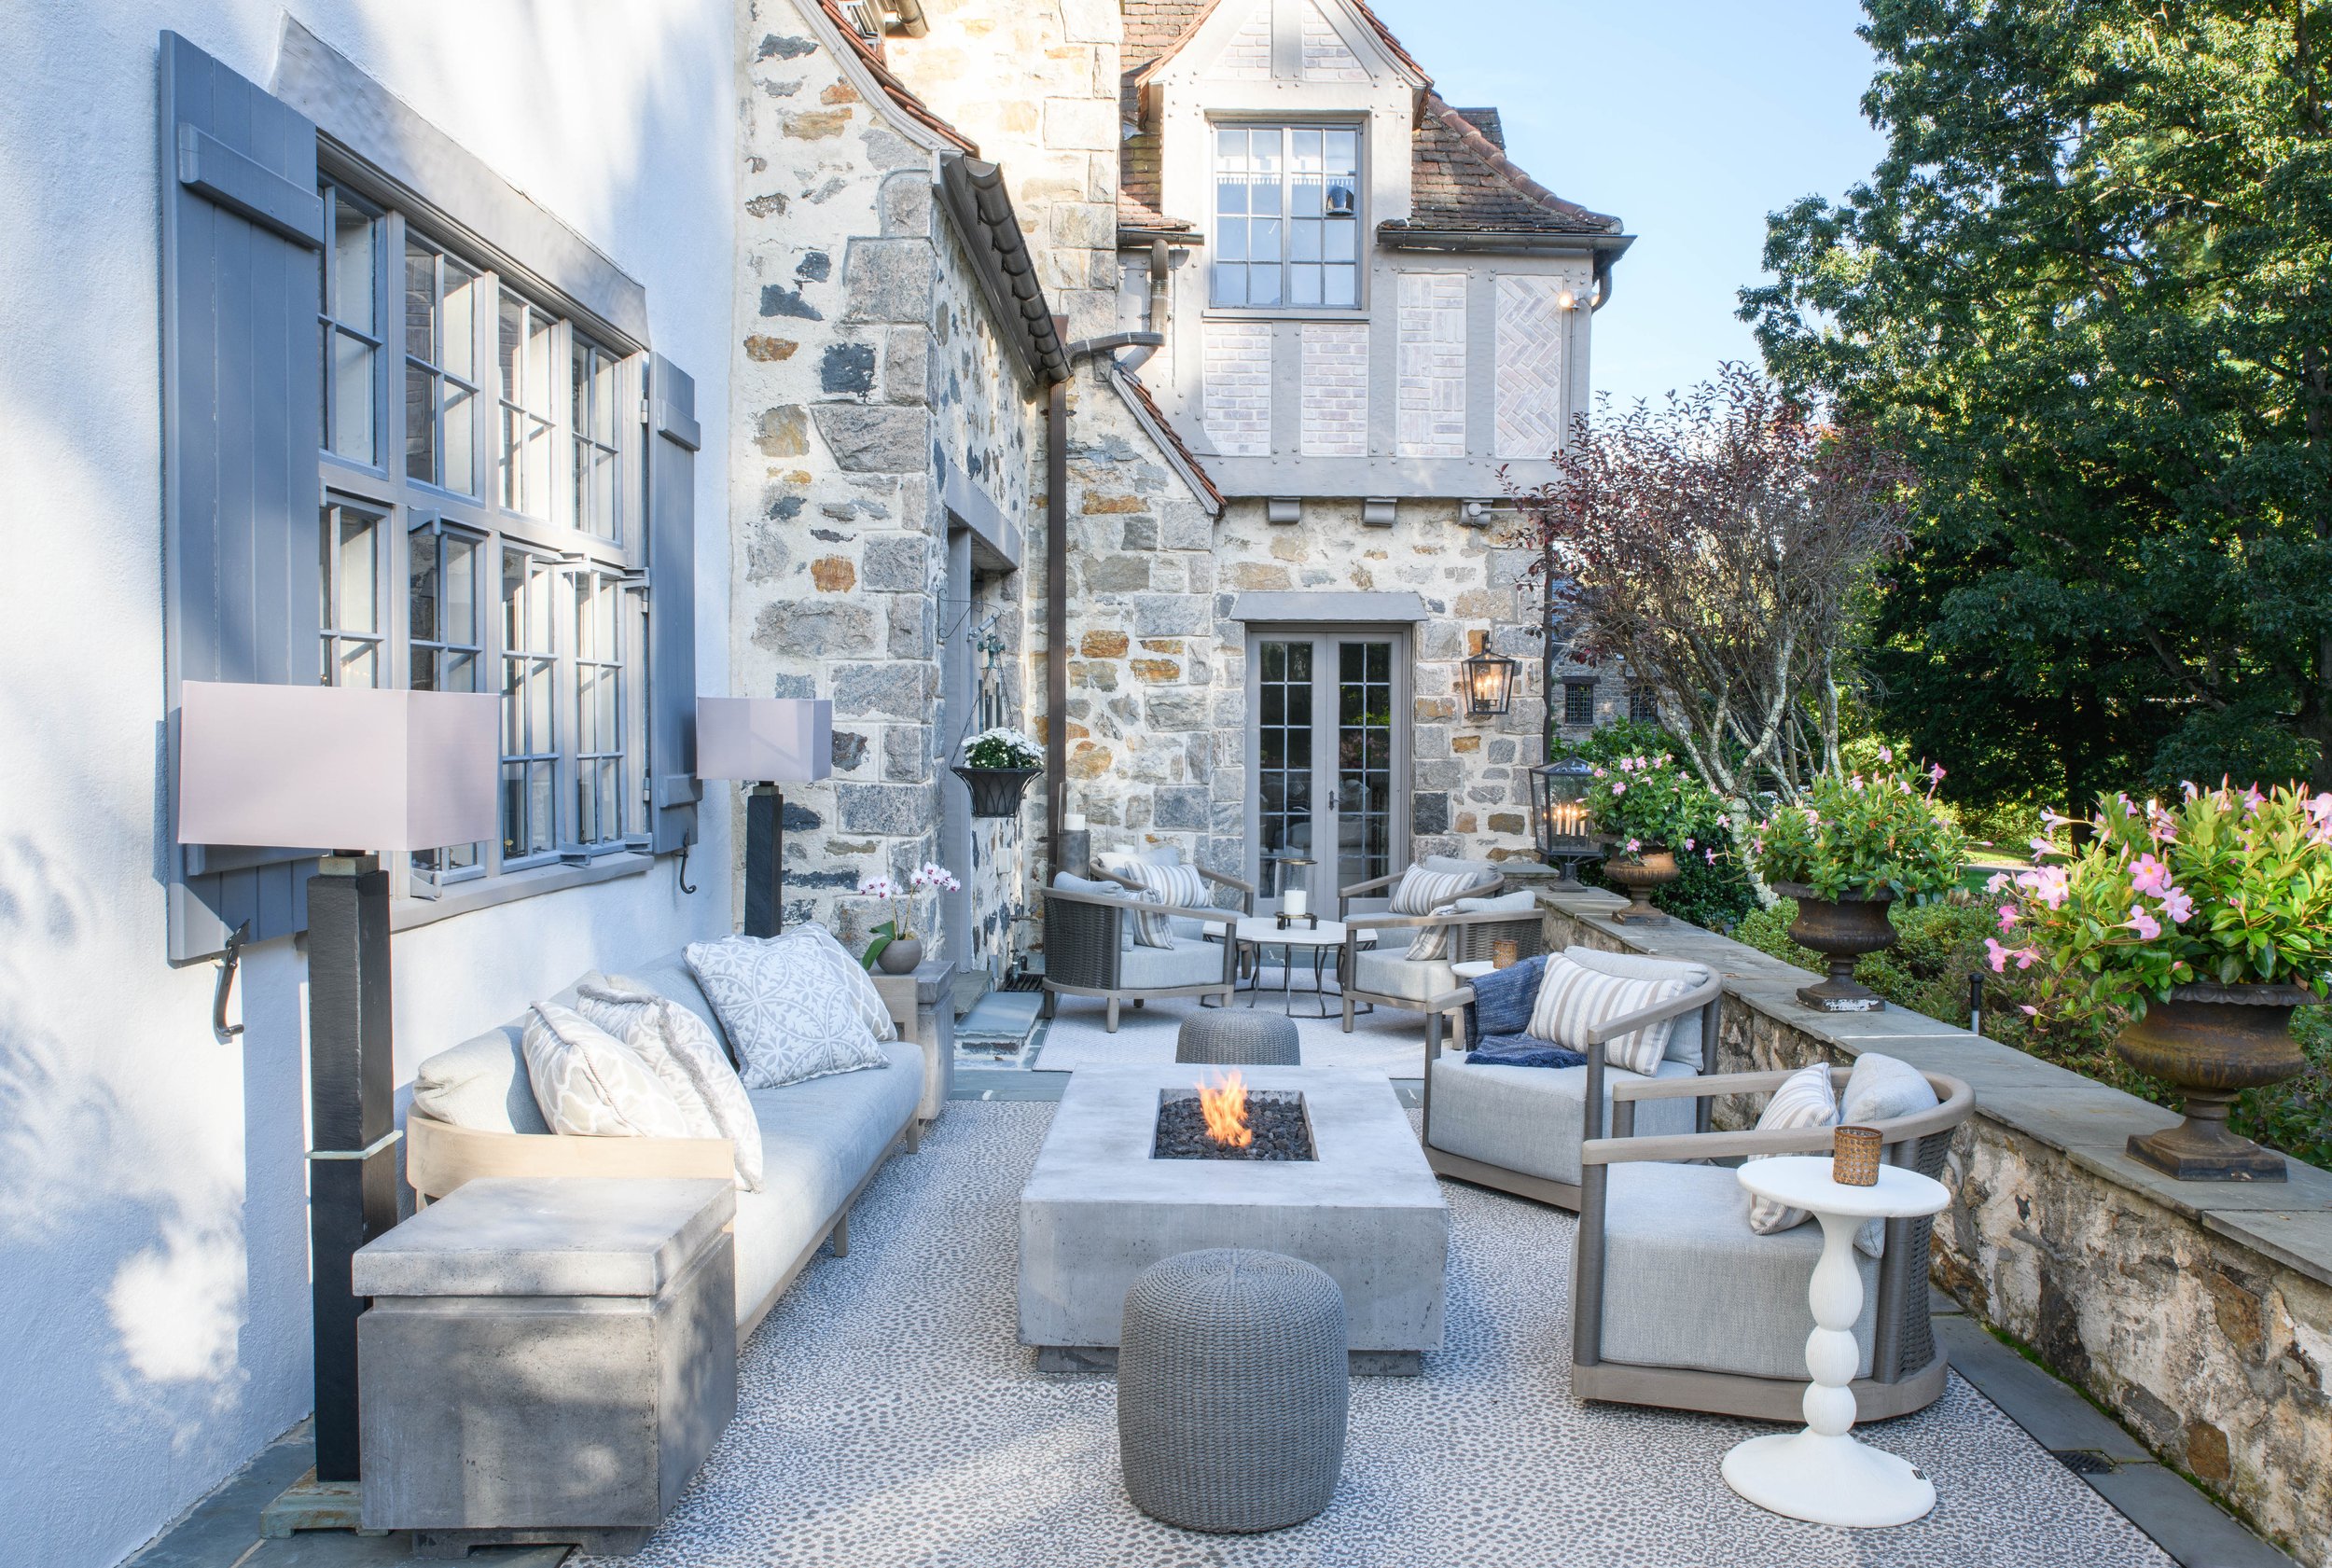 1-modern-brick-seating-patio-garden-interiordesigner-rinfret-westchester.jpg